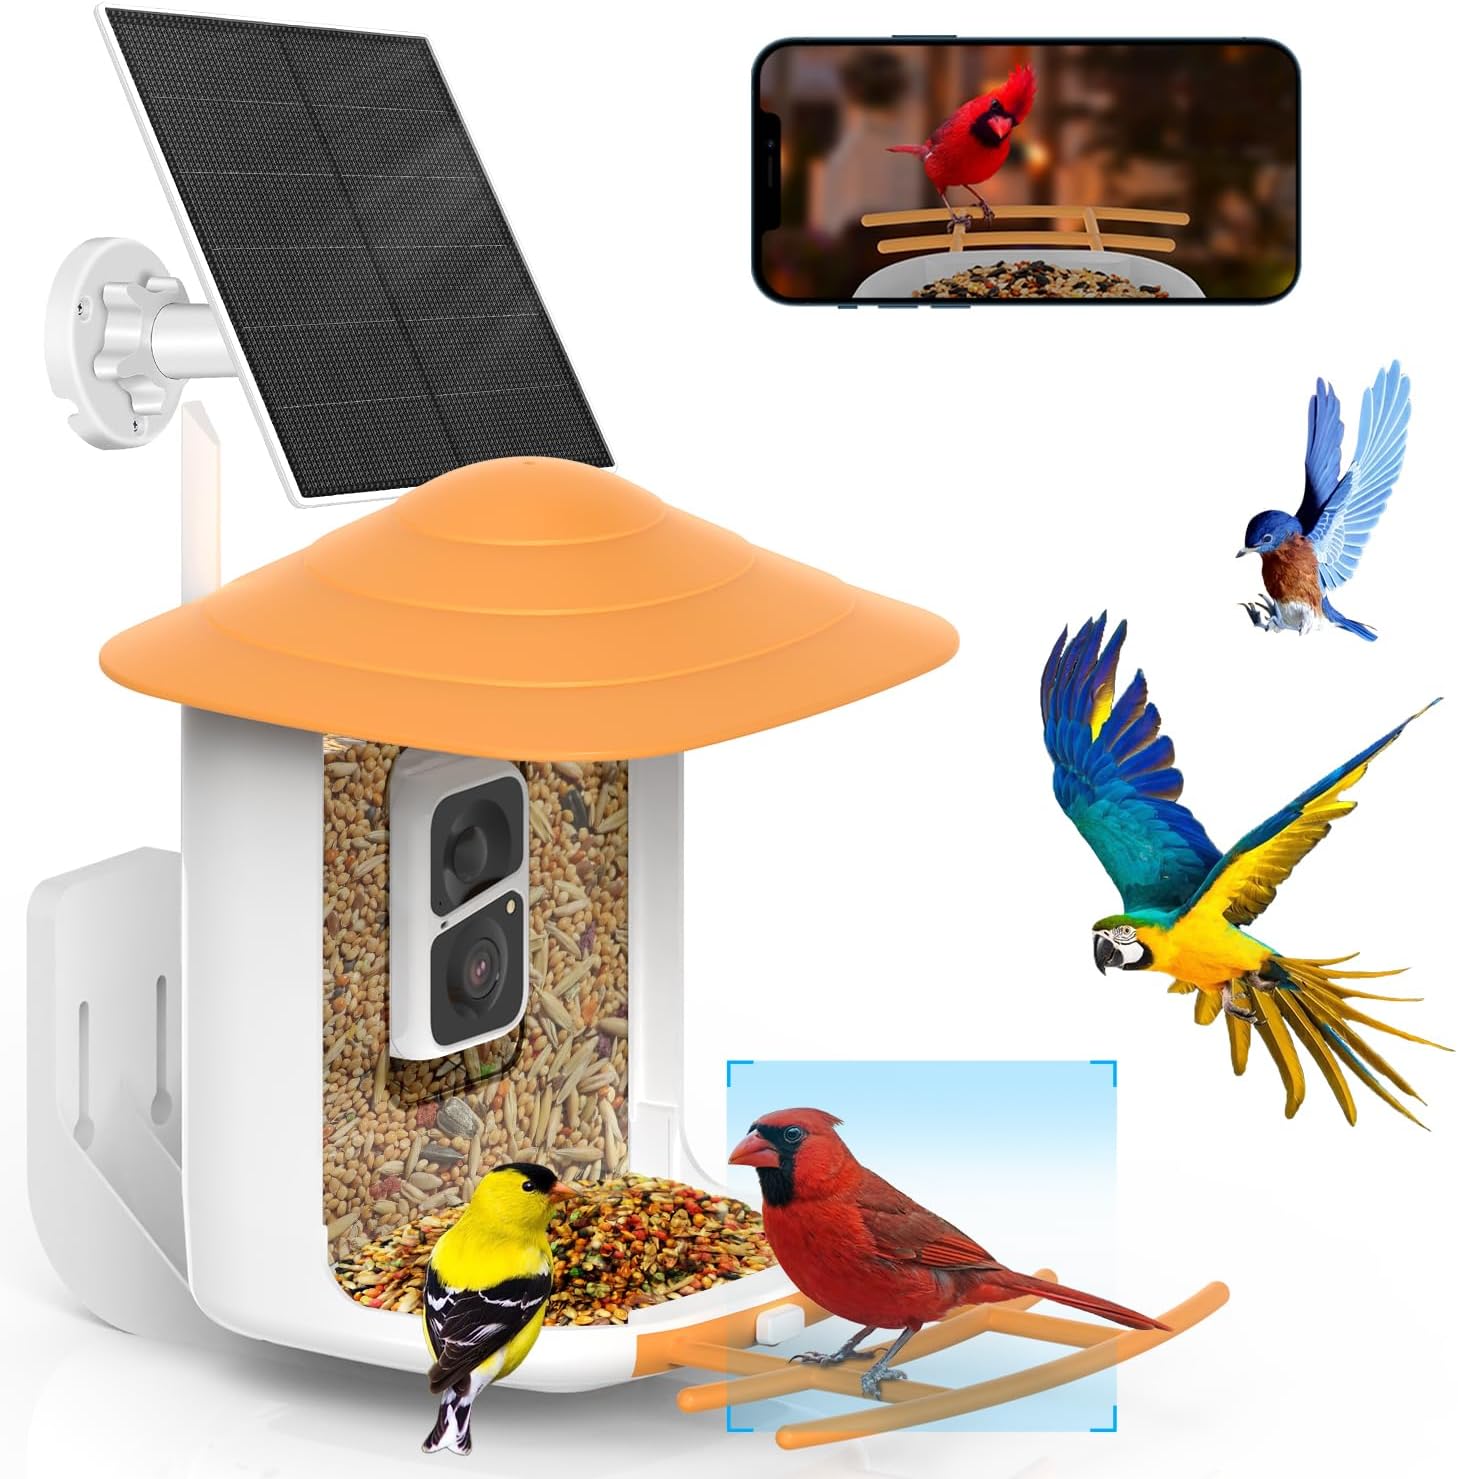 Soliom BF10 BF08 BF09 bird feeder camera 3W solar panel only also suitable for BF09 bird feeder camera